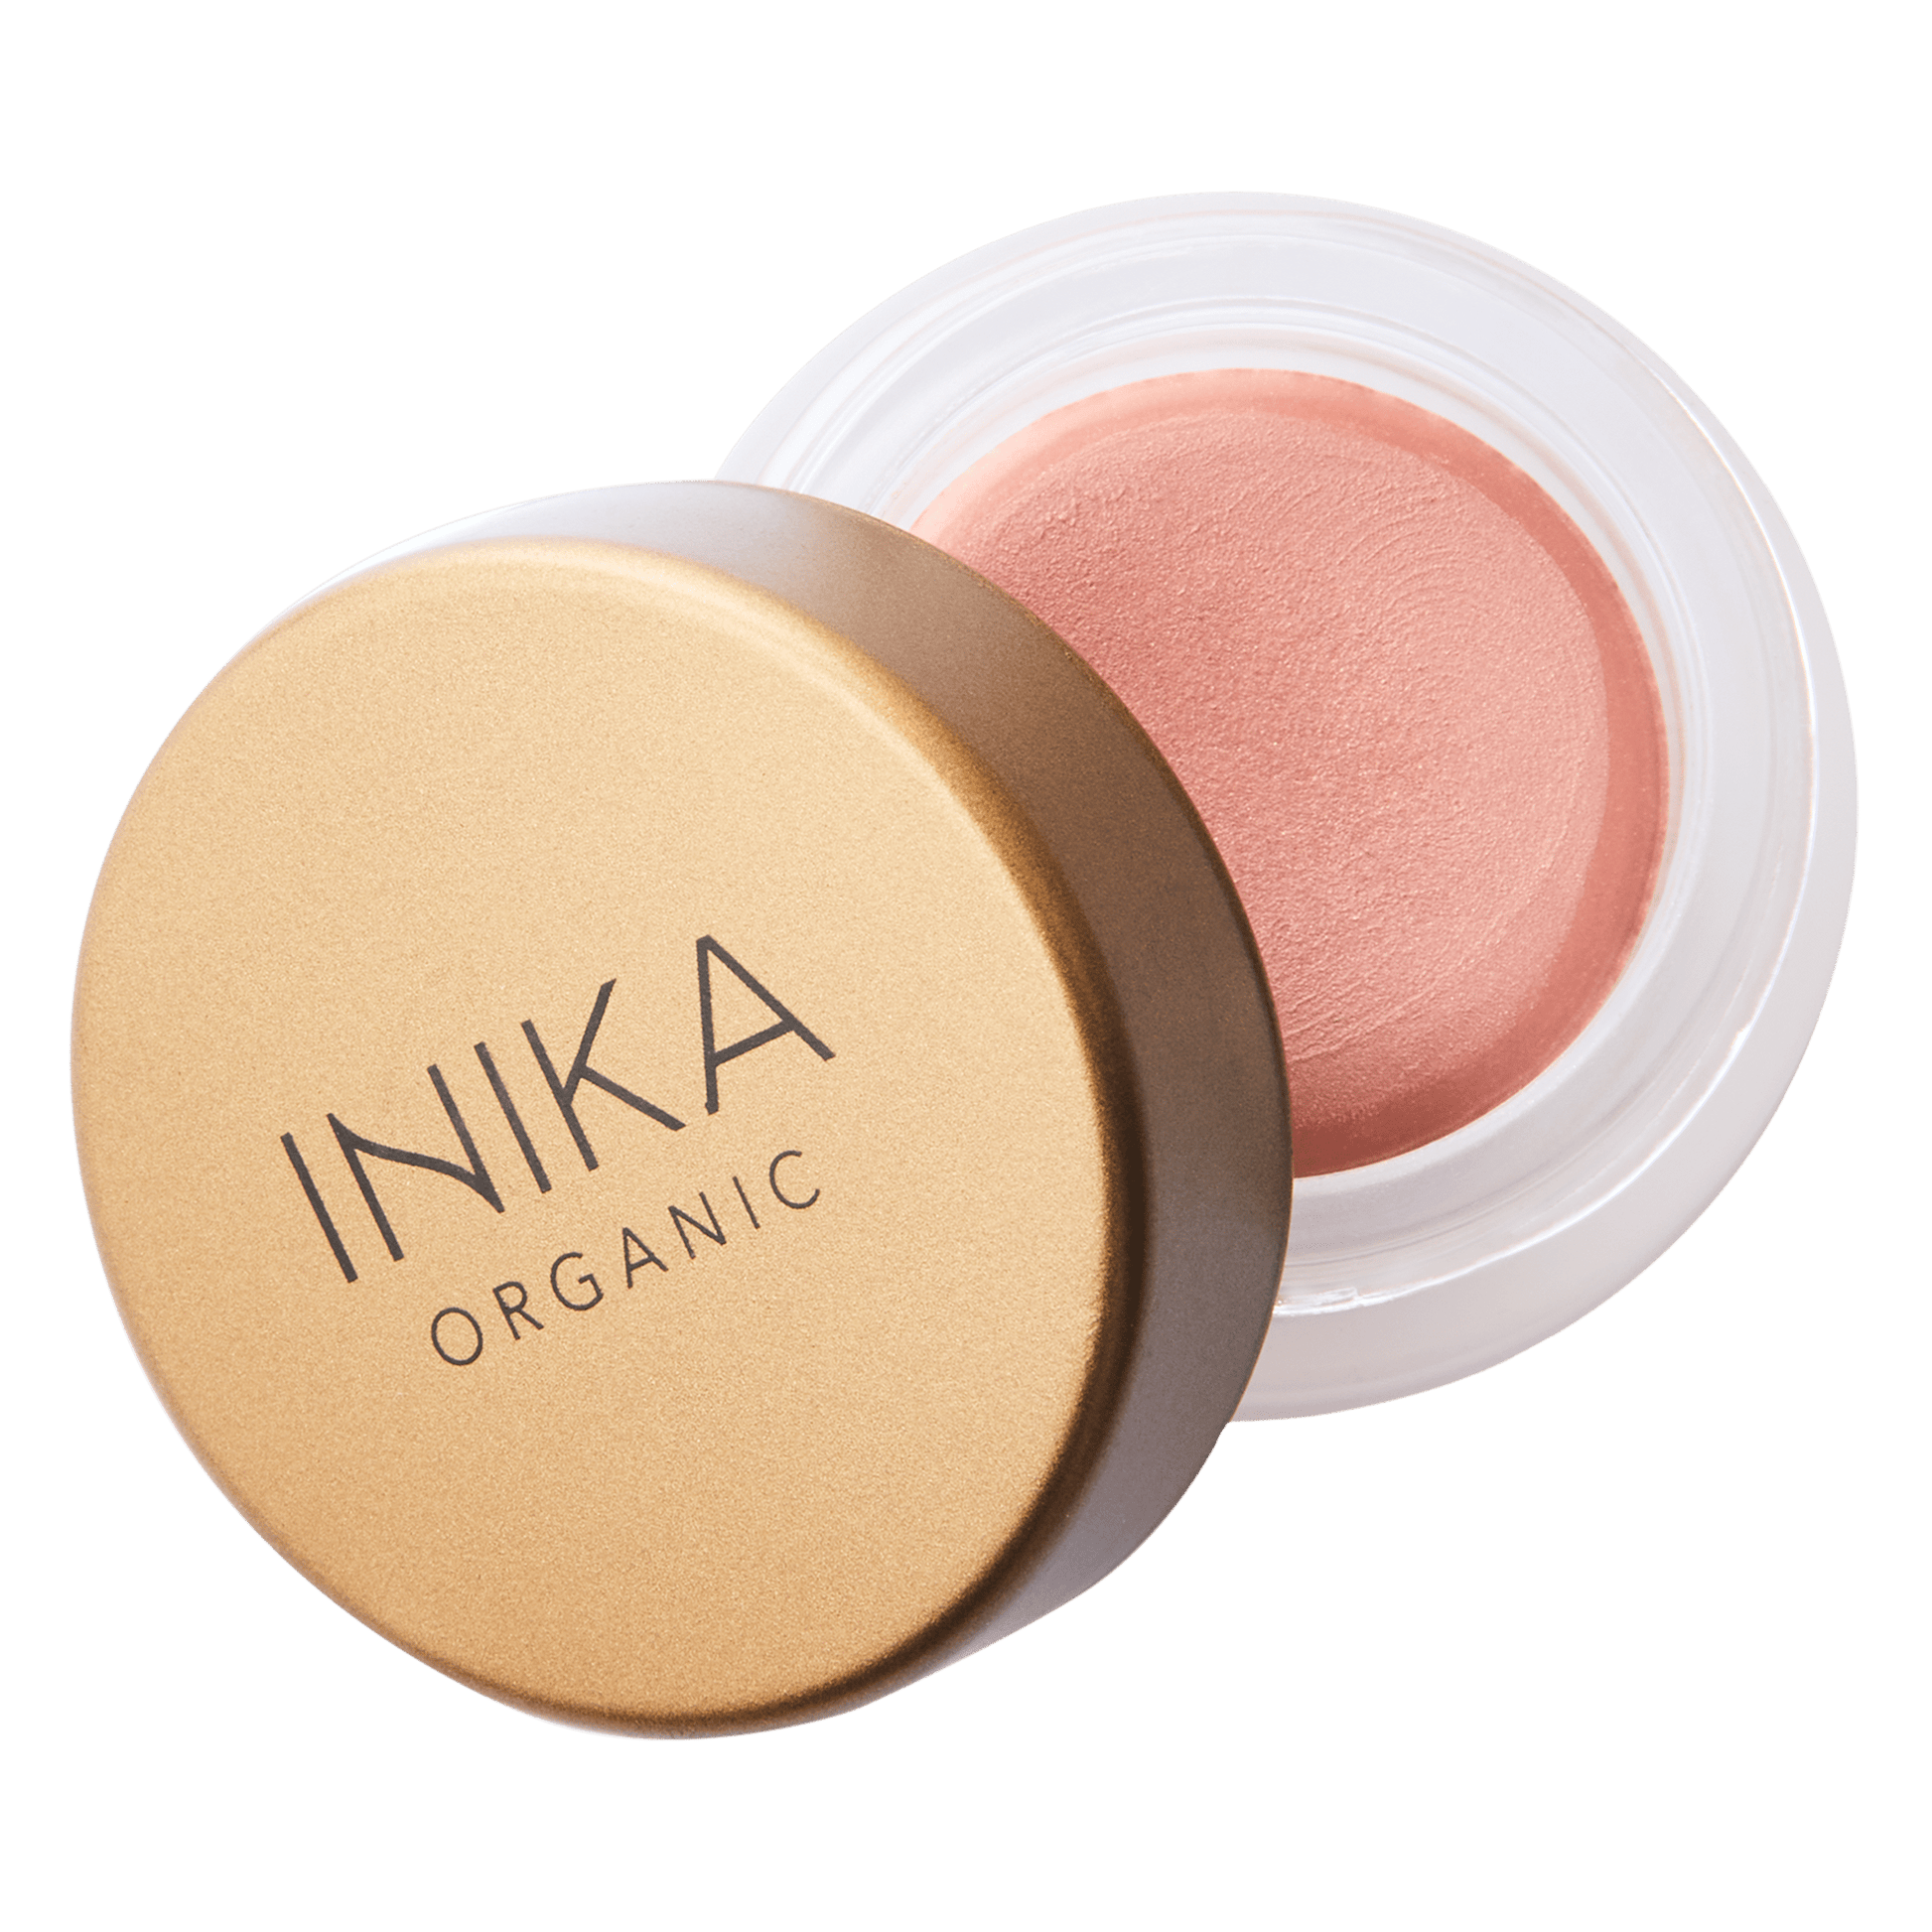 Inika Makeup INIKA Organic Lip & Cheek Cream Dusk